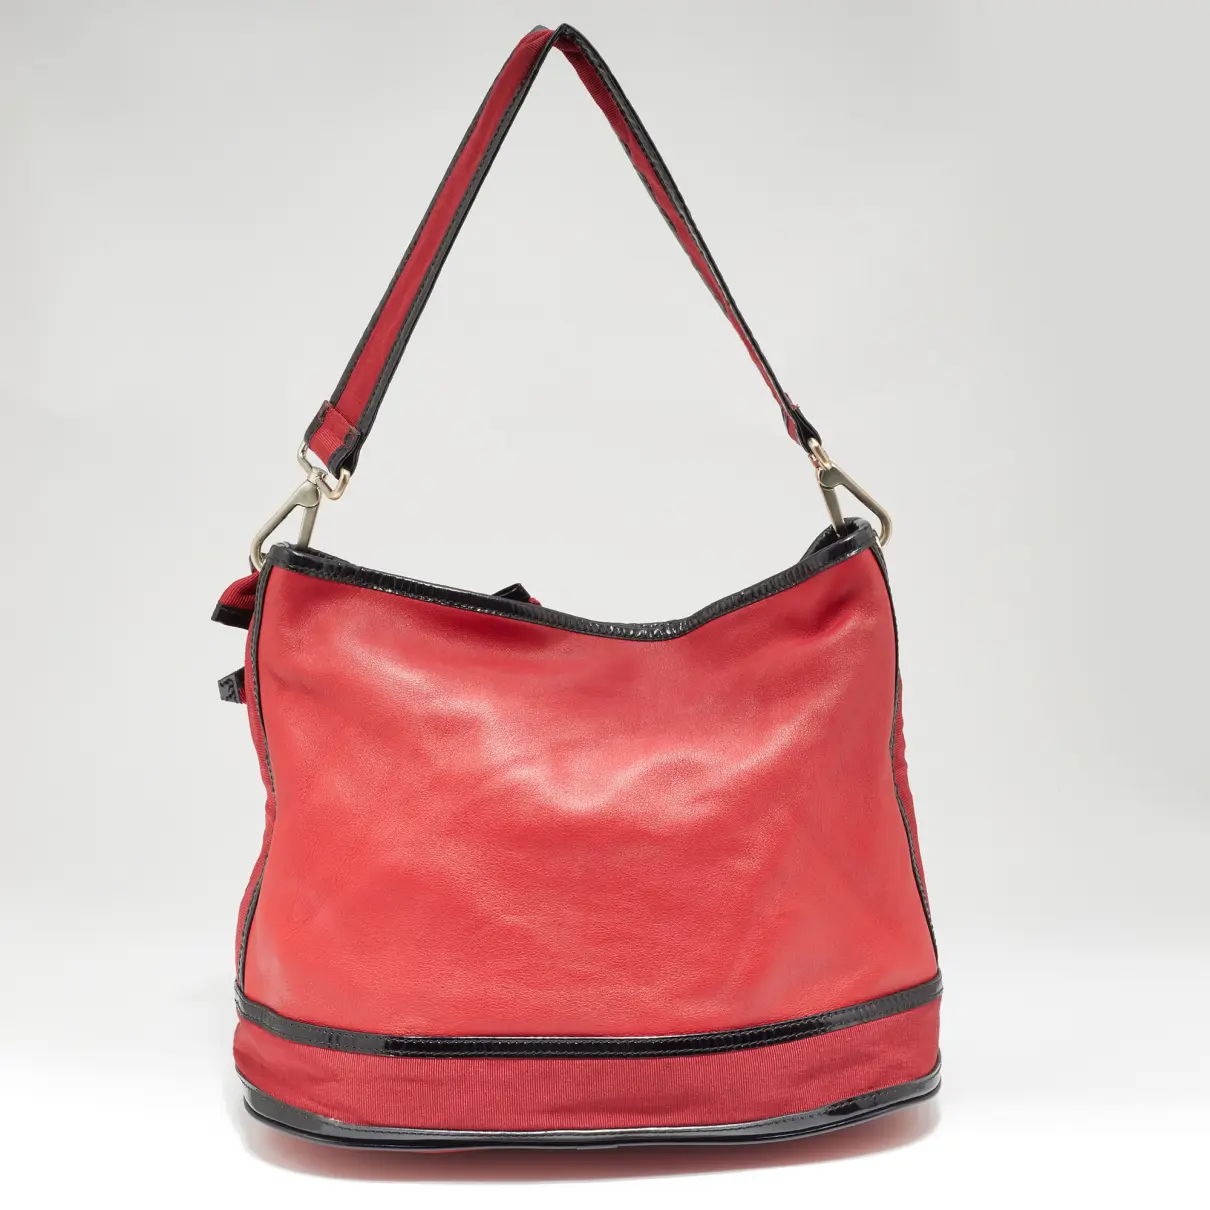 Luxury Kenzo Handbags Women